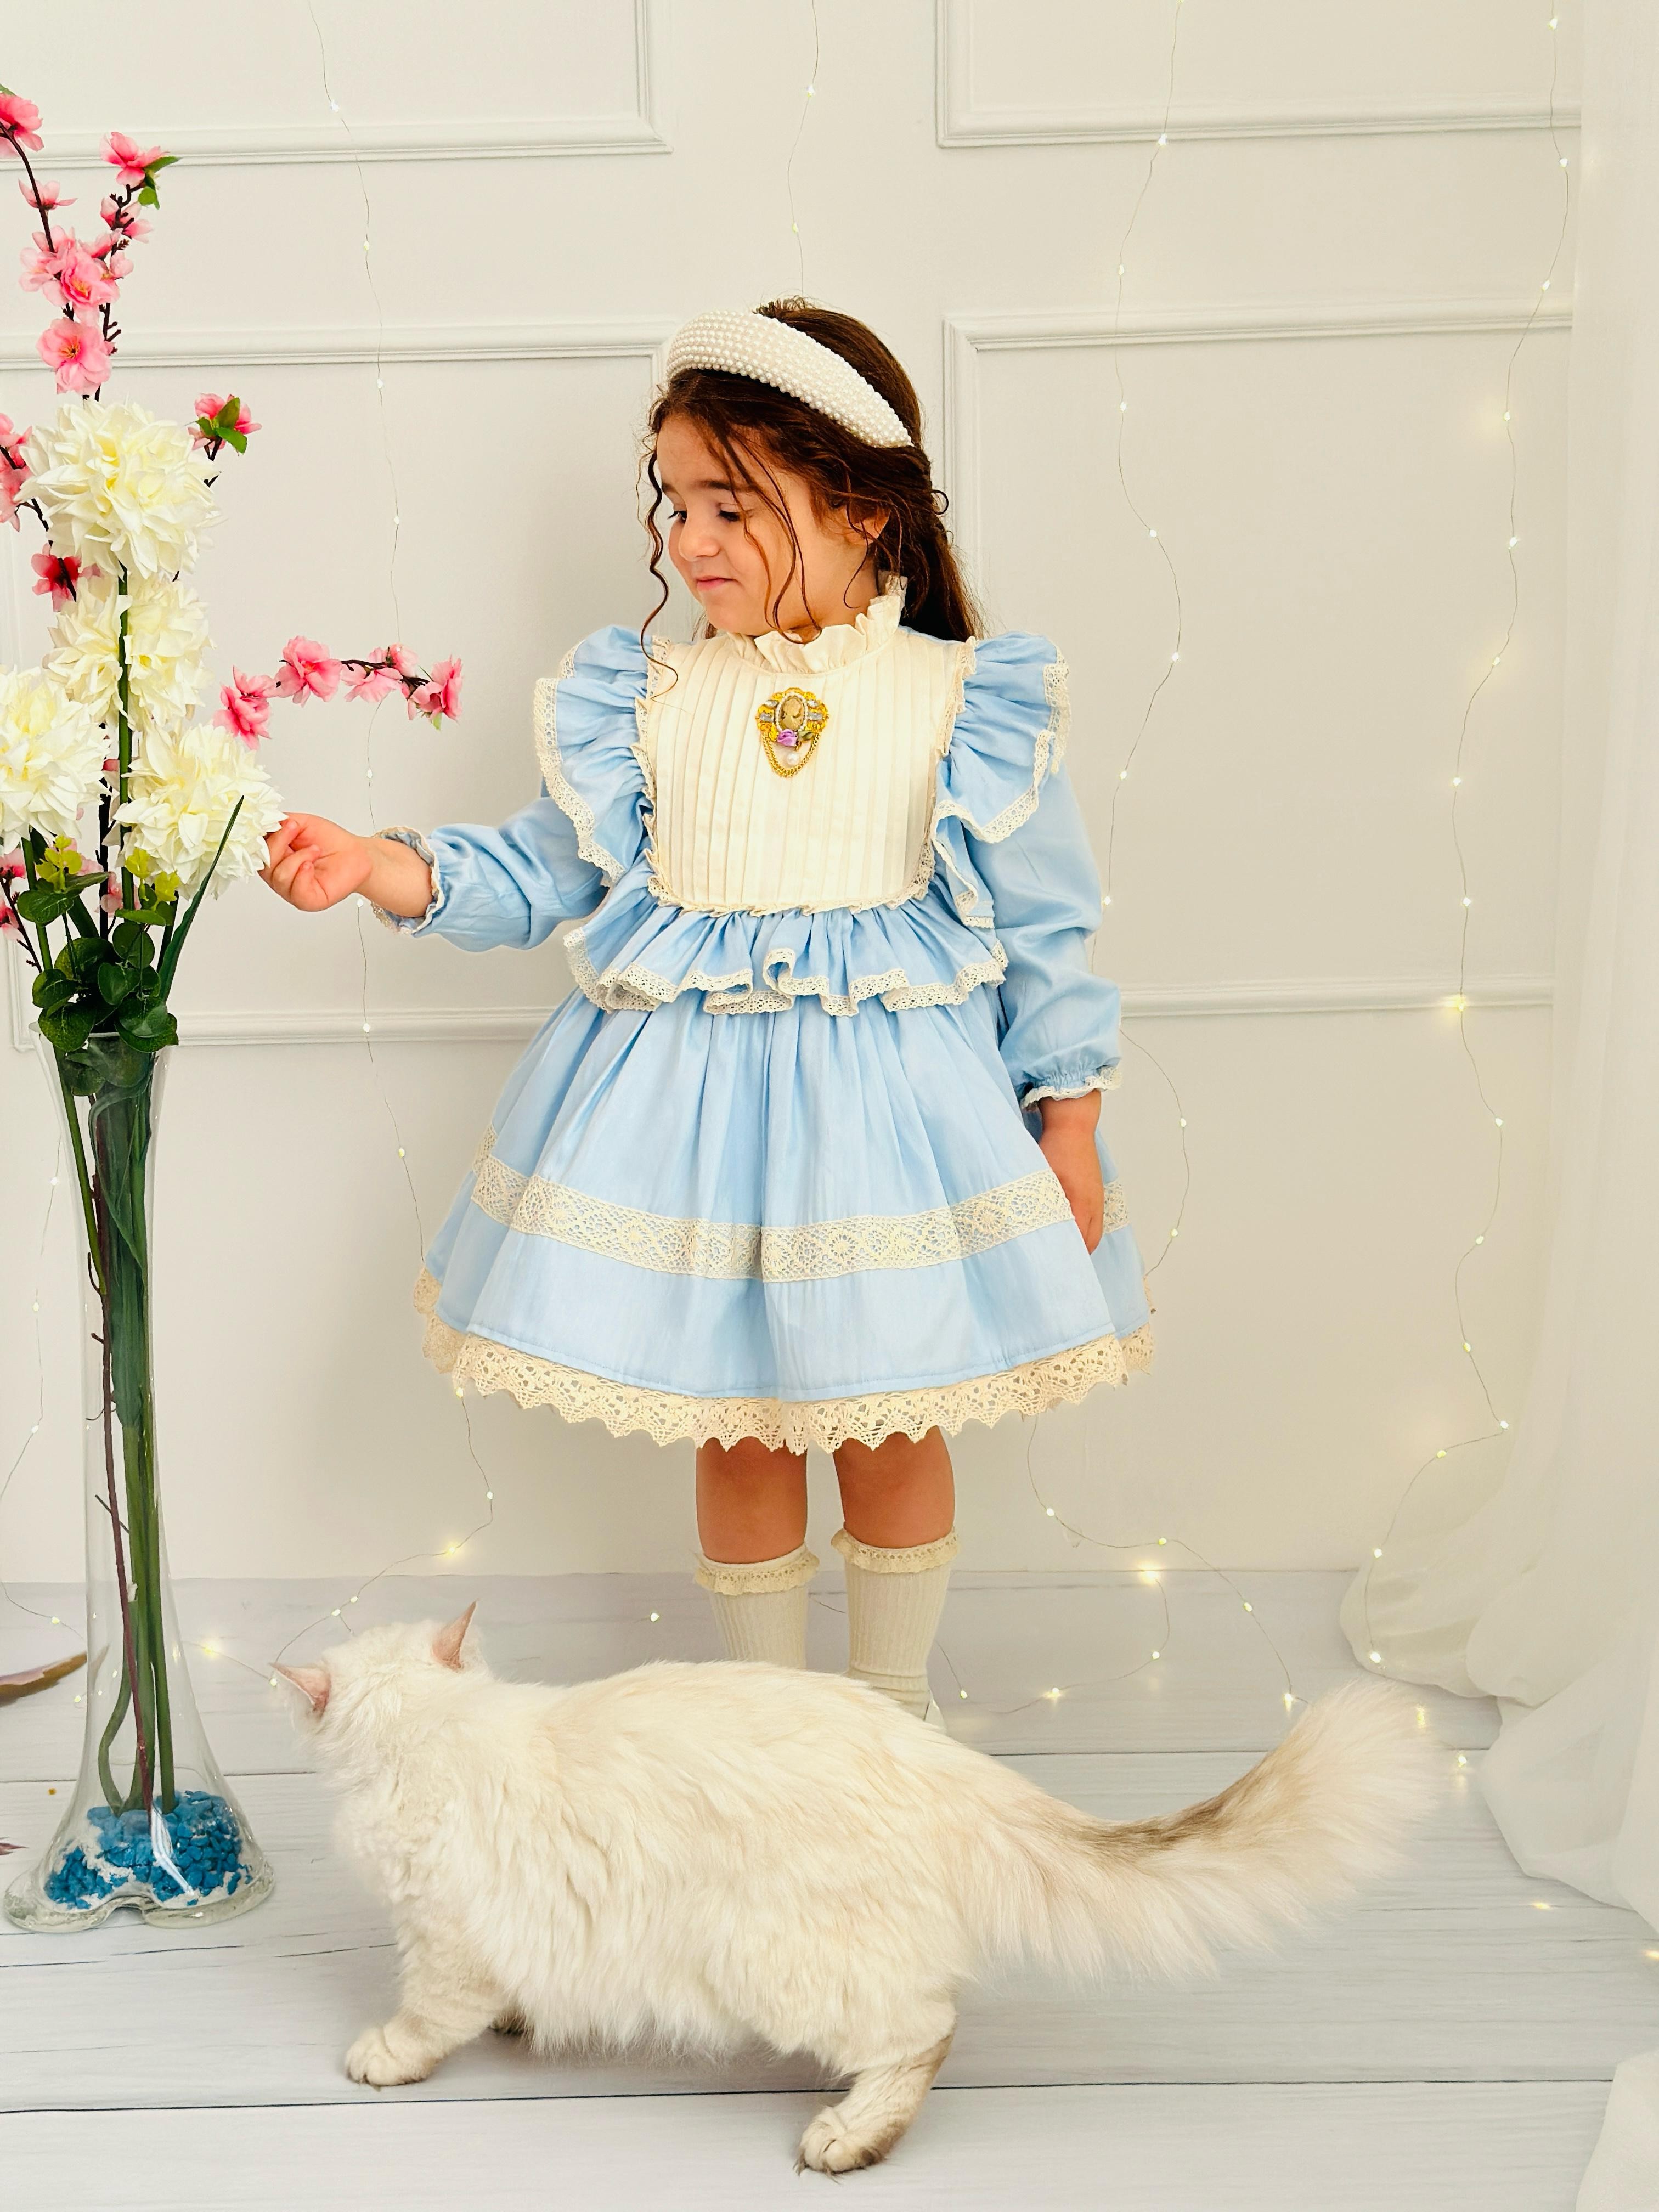 Mavi Okyanus Vintage Kız Bebek Elbise,Doğum günü elbise,fotoğraf çekim elbise,0-10 Yaş Uygun